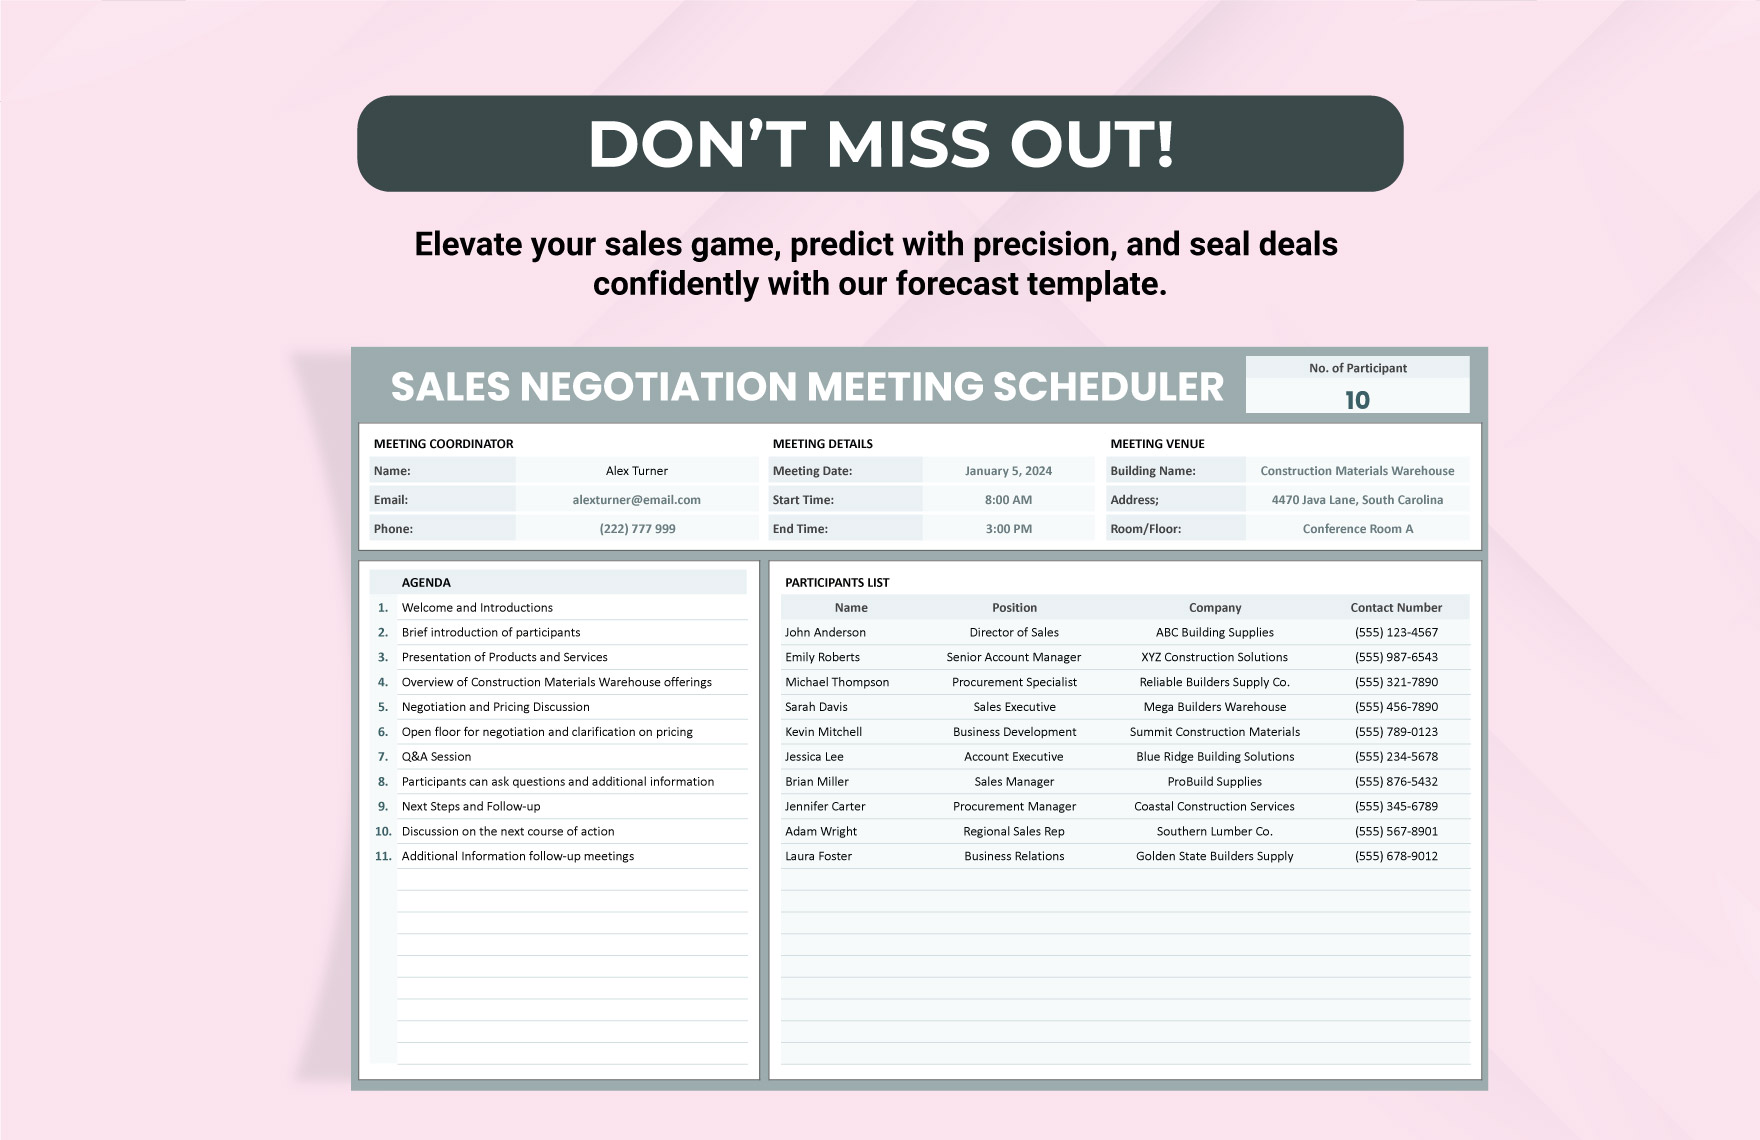 Sales Negotiation Meeting Scheduler Template